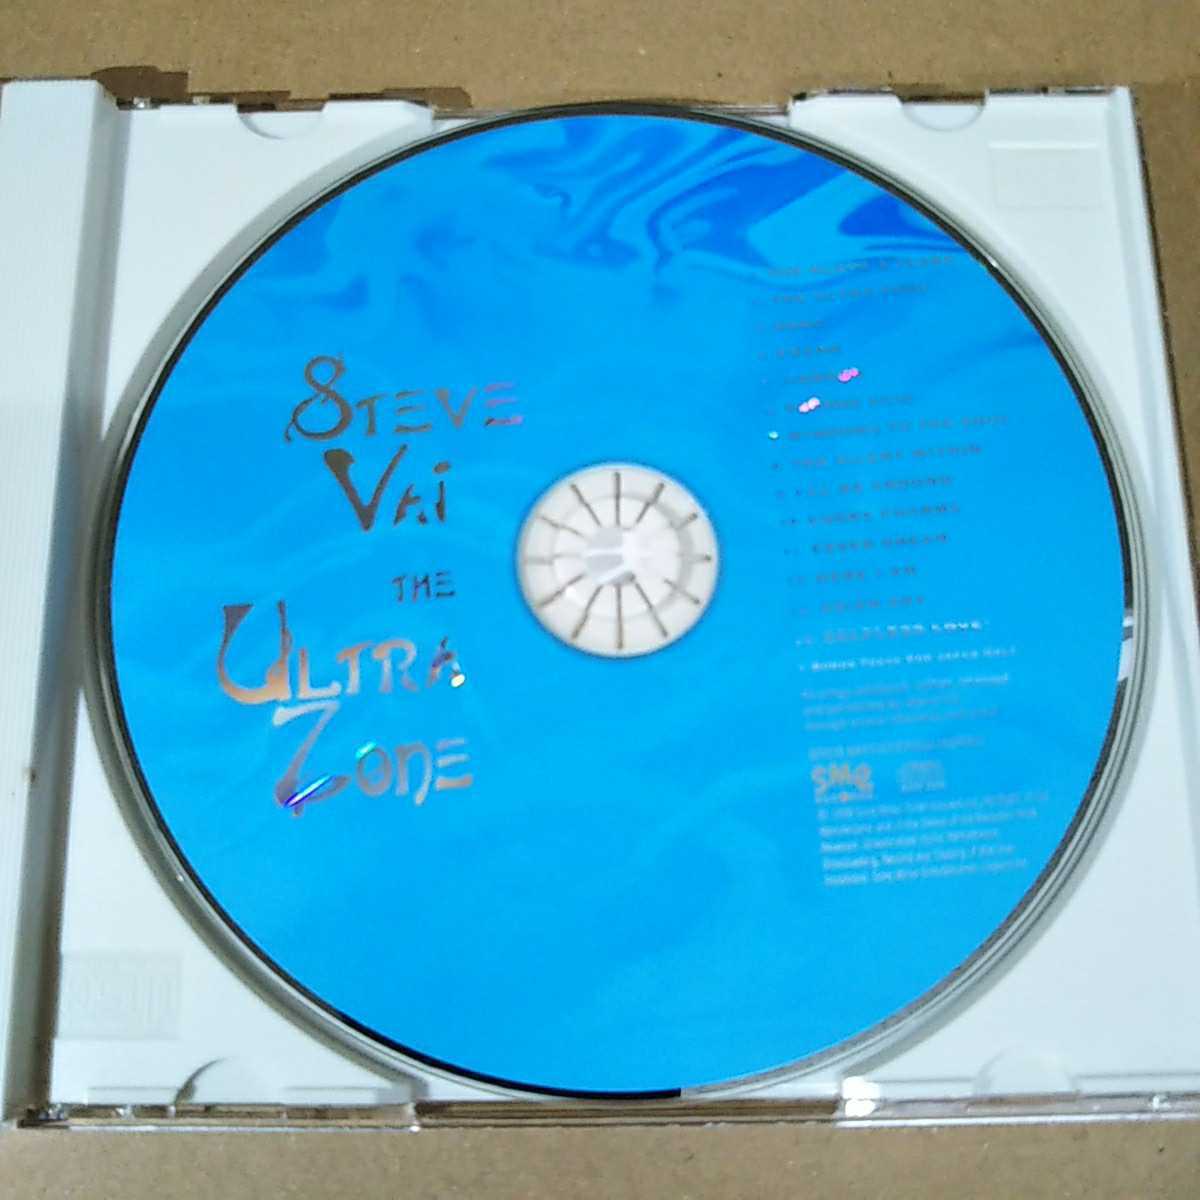 中古CD STEVE VAI / スティーヴ・ヴァイ『THE ULTRA ZONE』国内盤/帯無し SRCS-8977【1234】